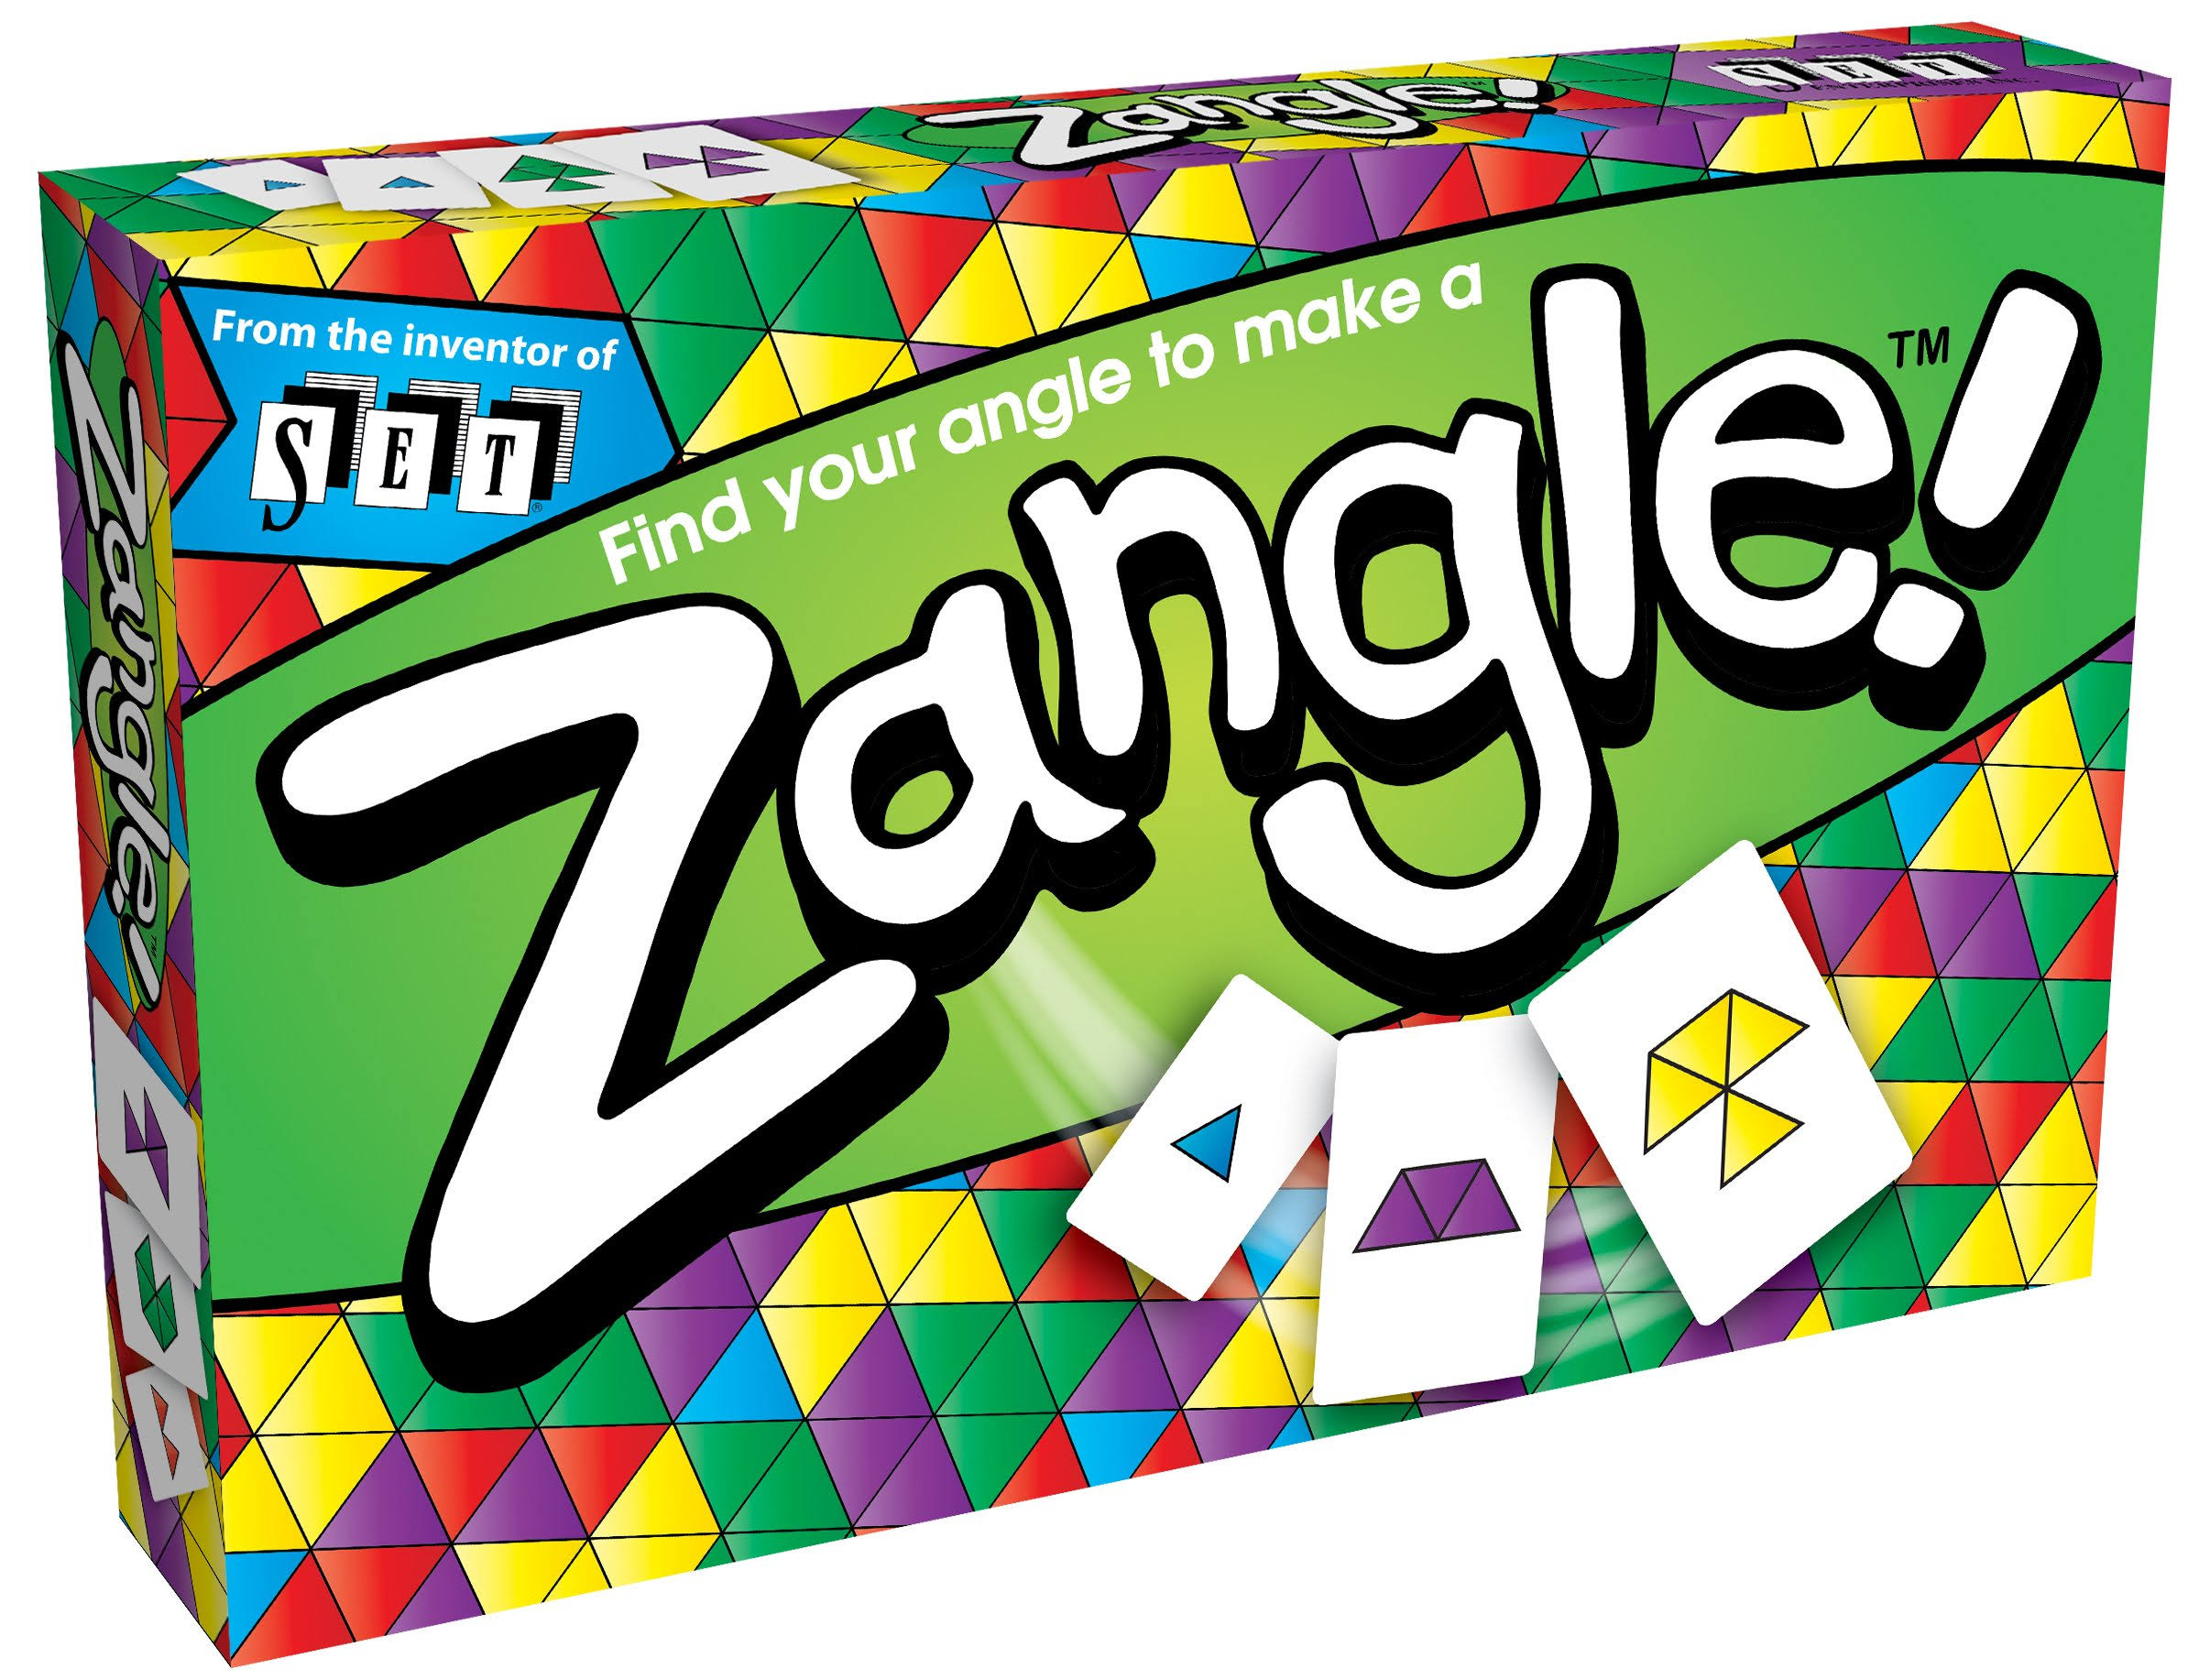 Zangle Card Game